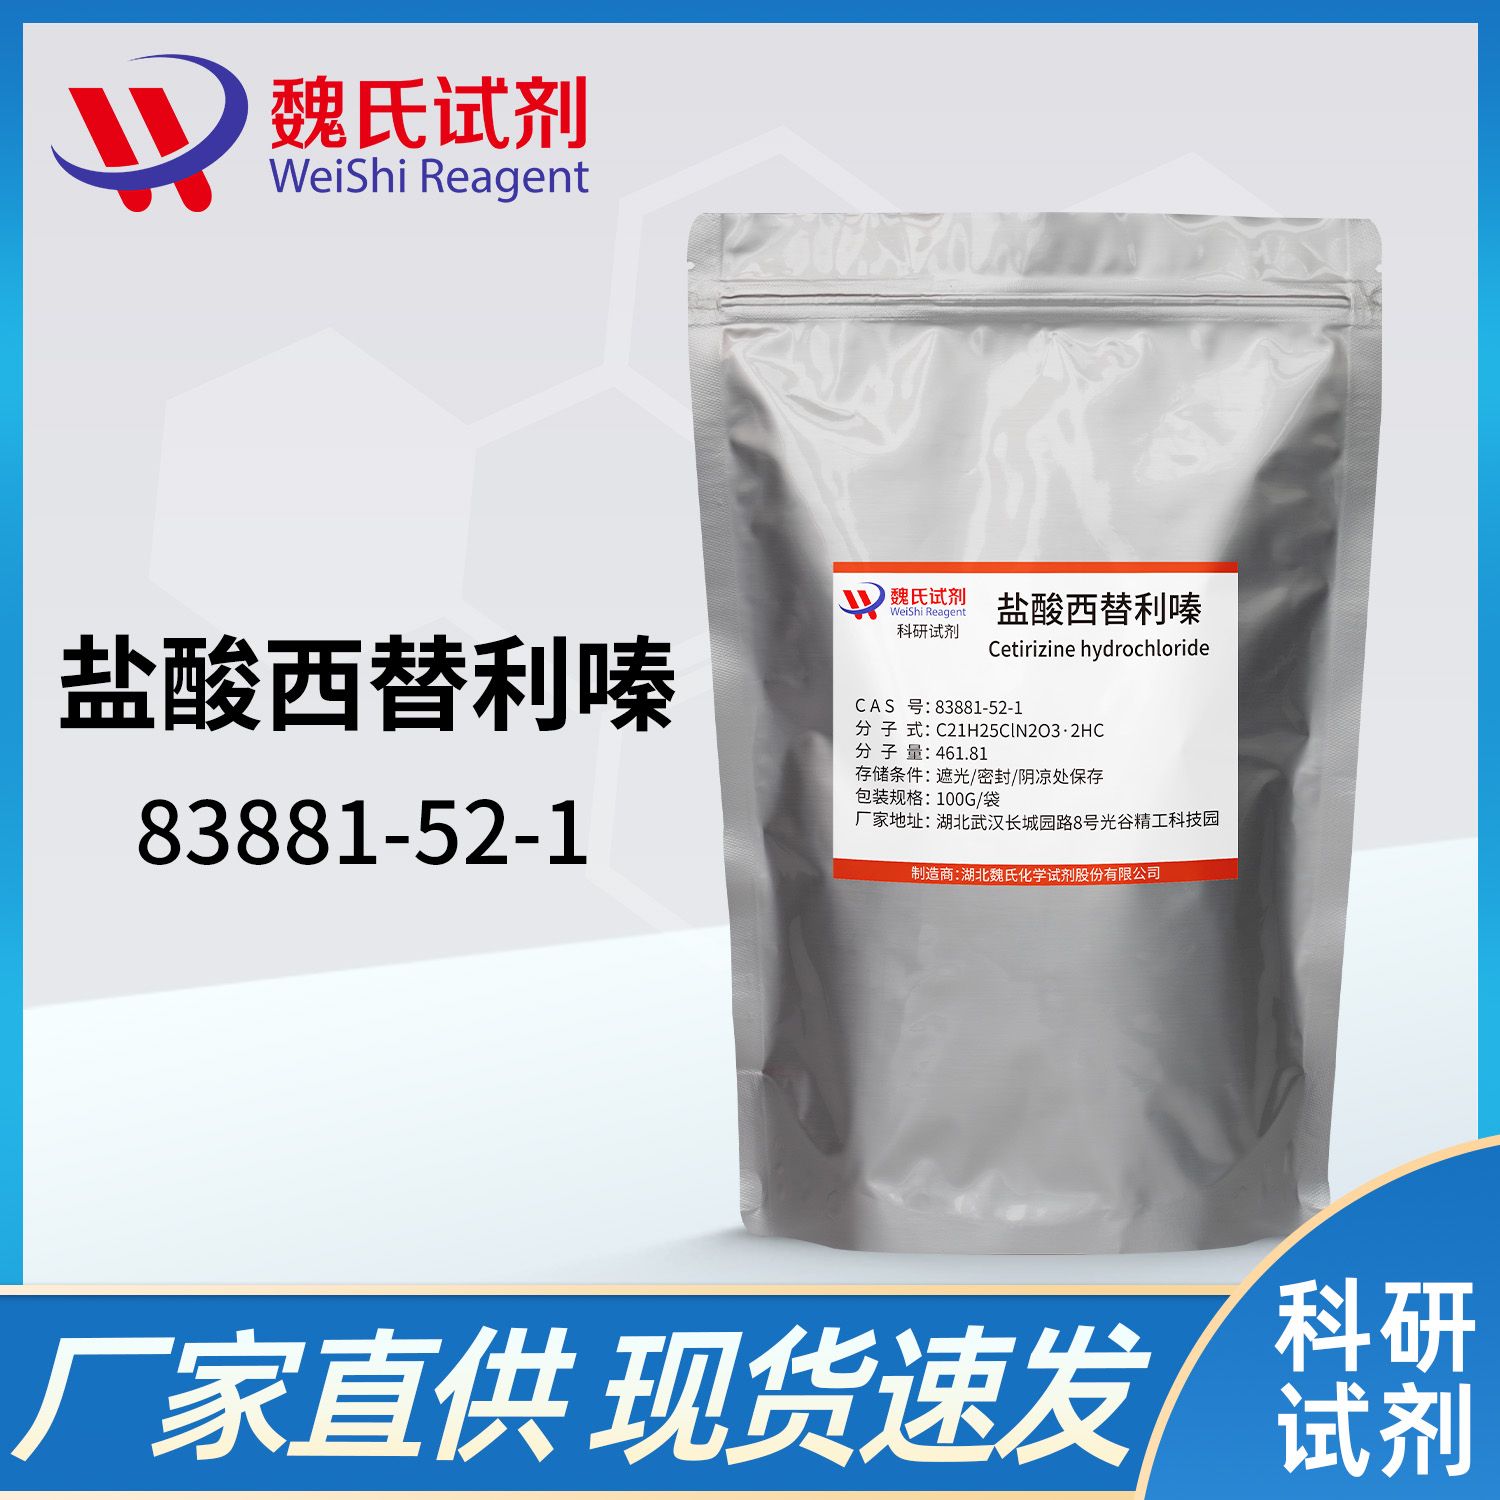 83881-52-1 /盐酸西替利嗪/Cetirizine hydrochloride